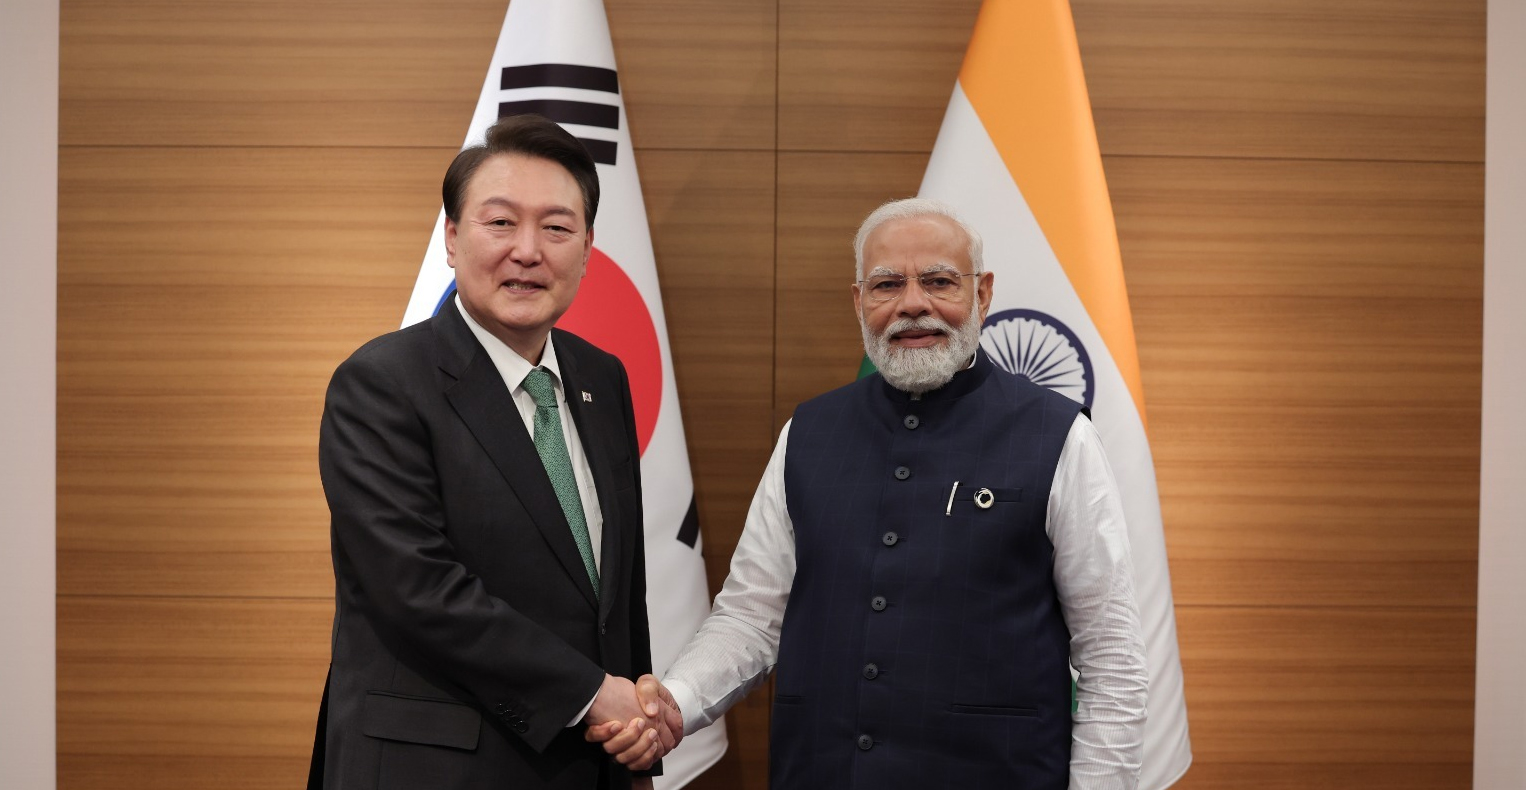 भारत और दक्षिण कोरिया ने किस वर्ष औपचारिक राजनयिक संबंध स्थापित किए?